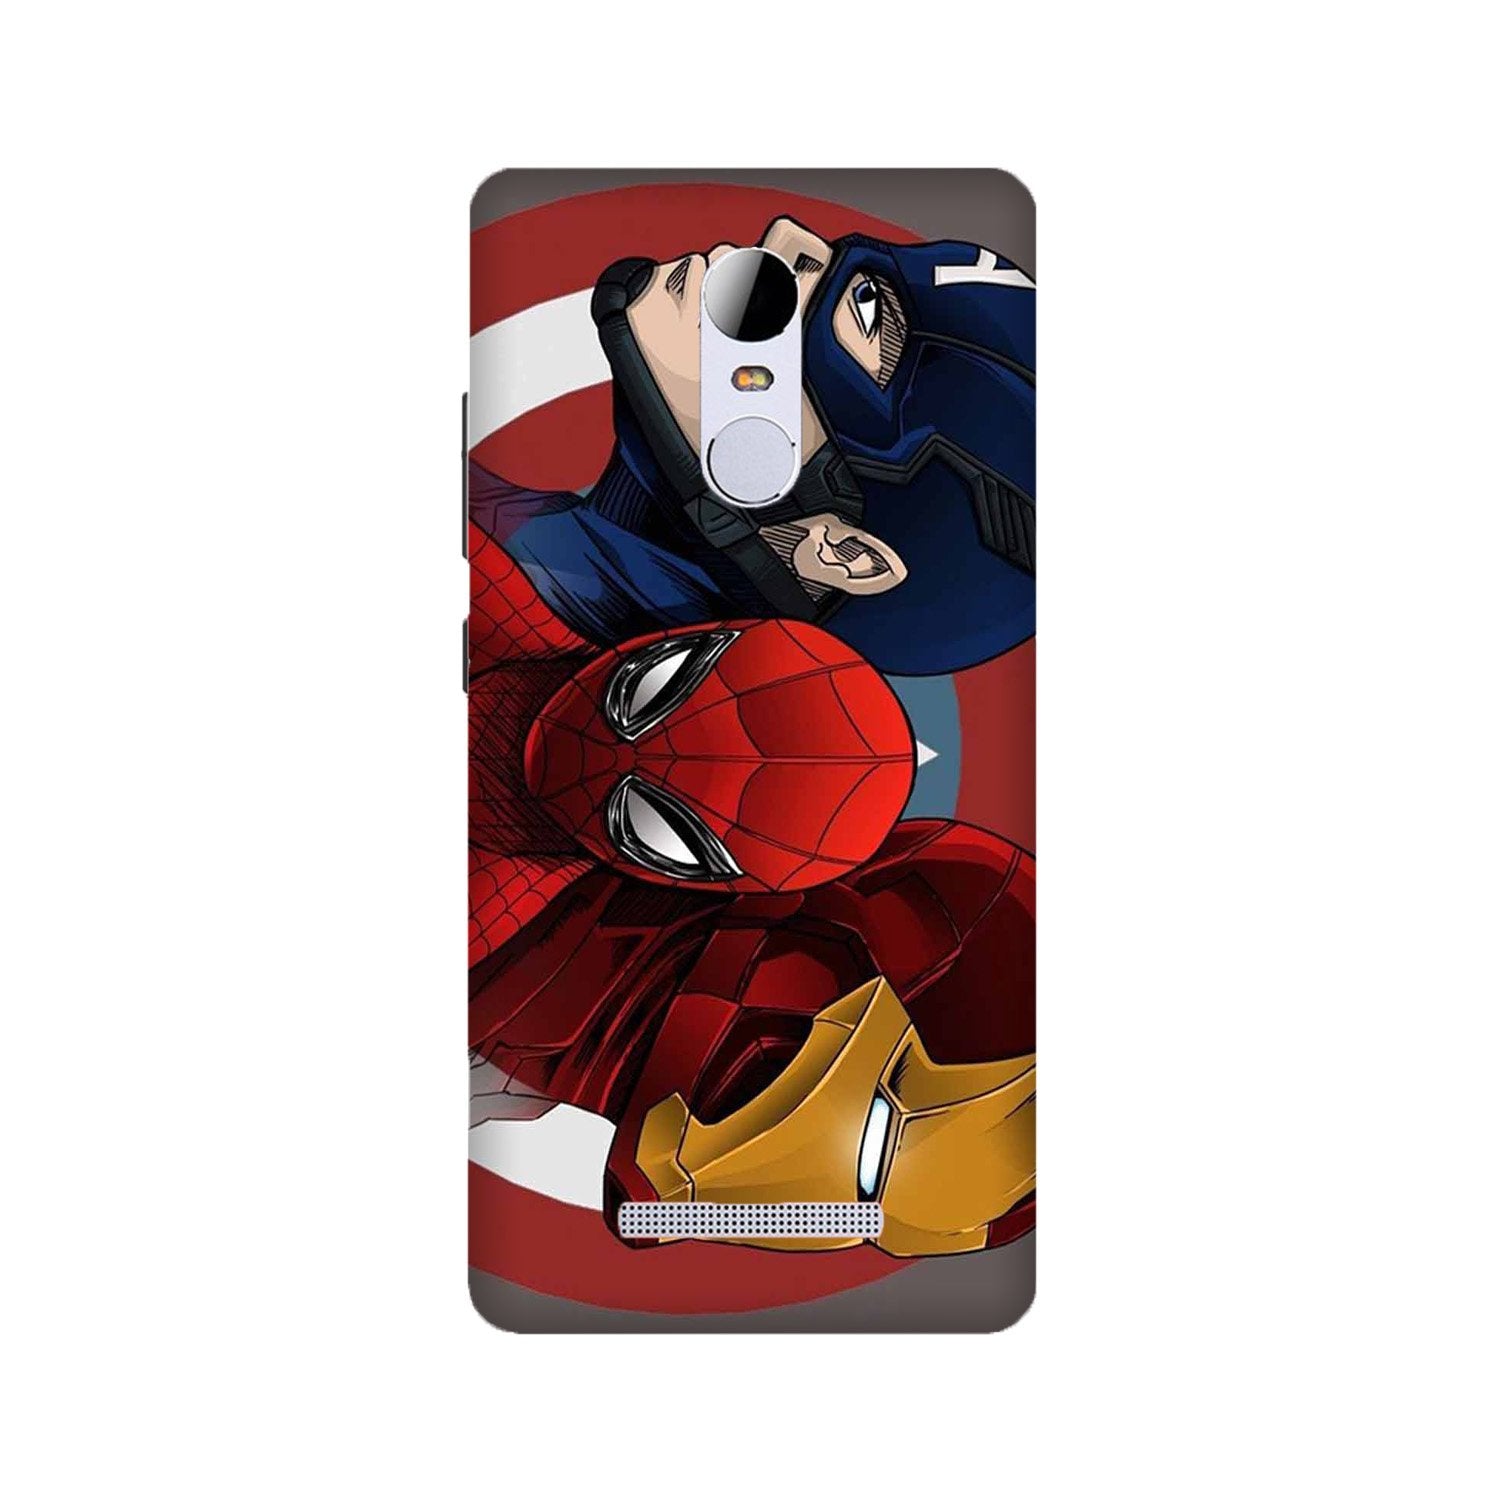 Superhero Mobile Back Case for Redmi Note 3(Design - 311)